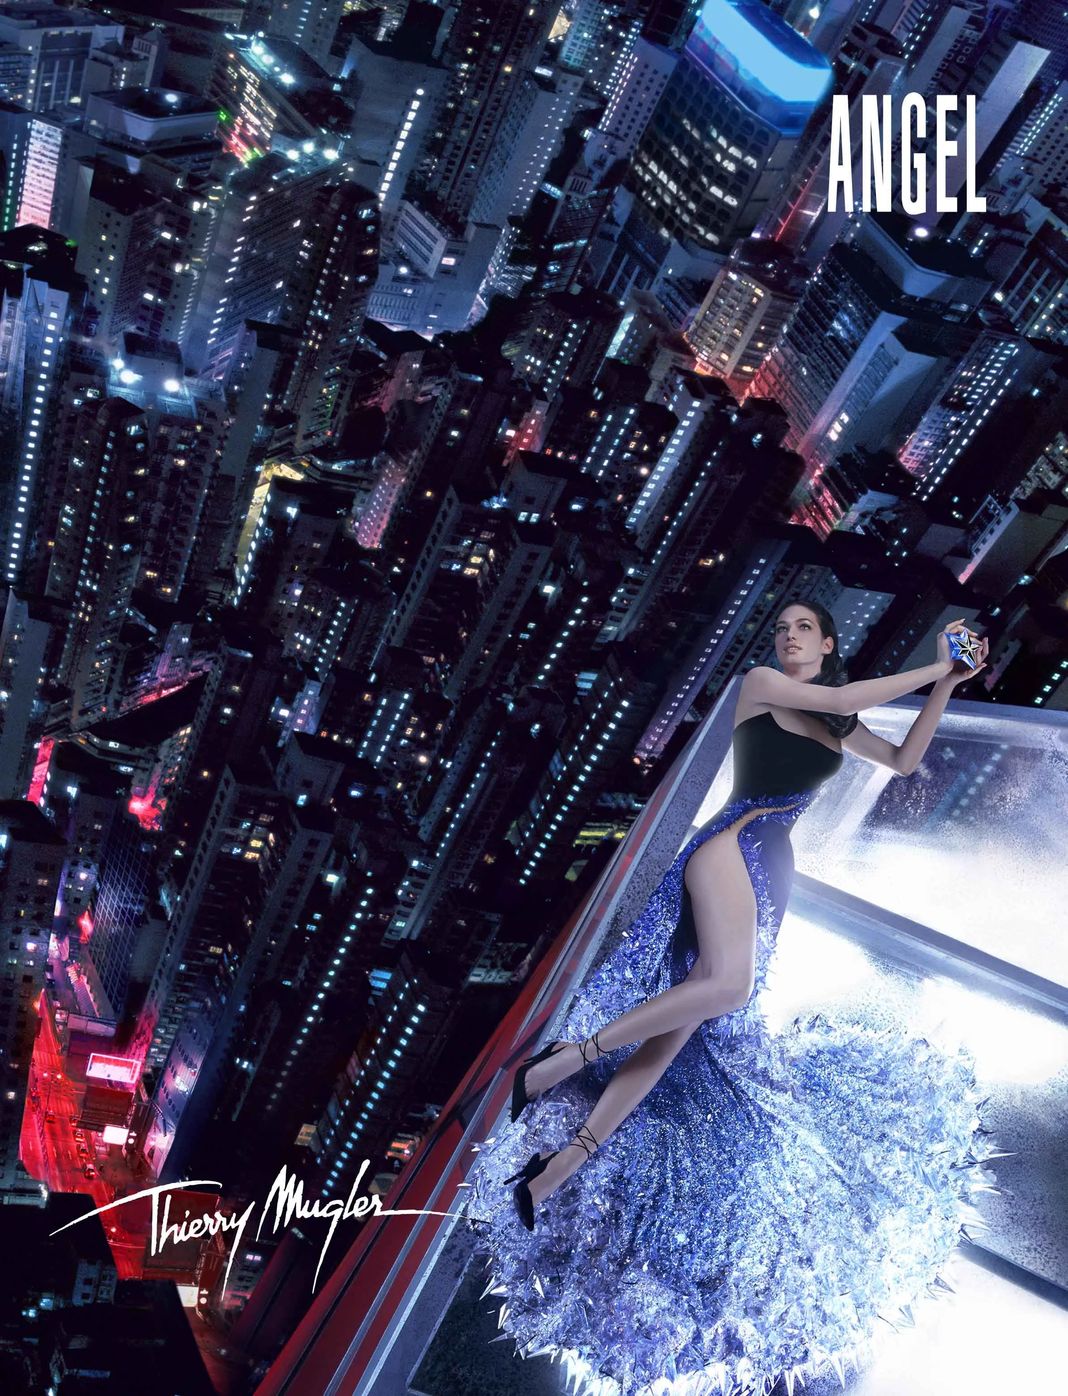 Анна Мария Чех в рекламной кампании аромата Angel Mugler